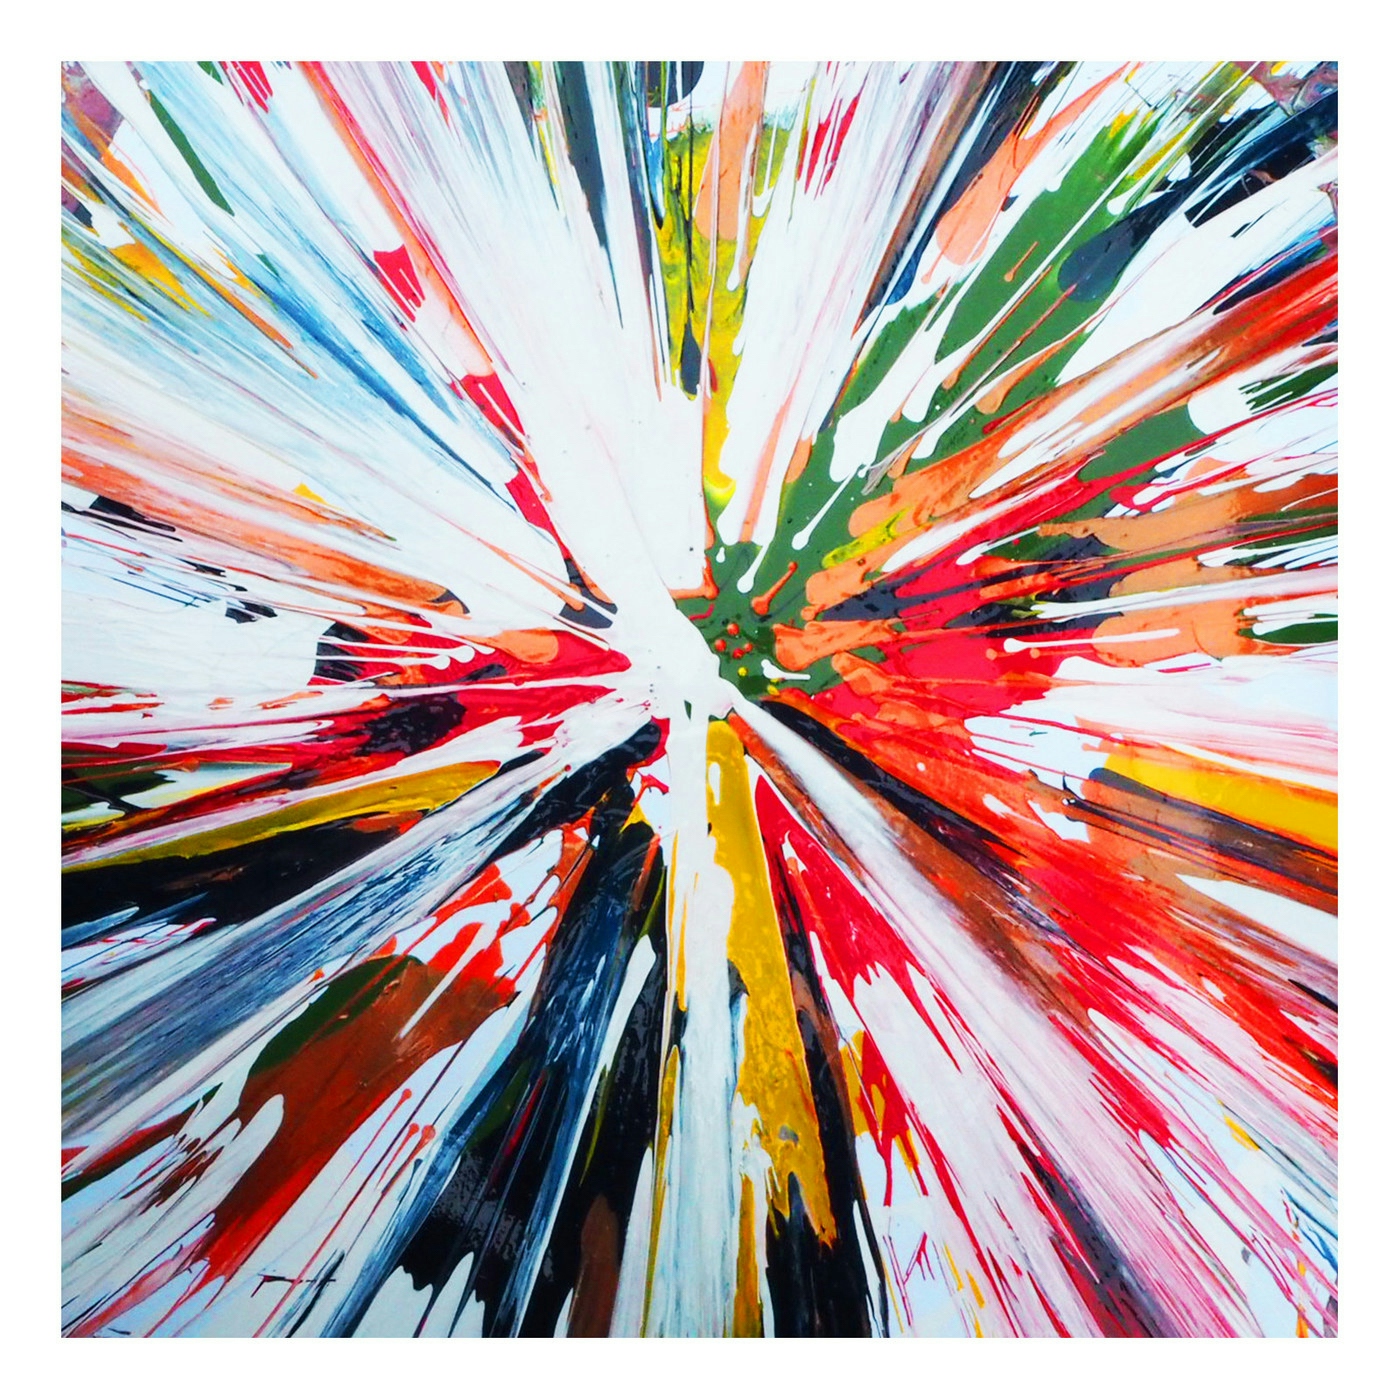 Album artwork for Album artwork for Spinn by Spinn by Spinn - Spinn